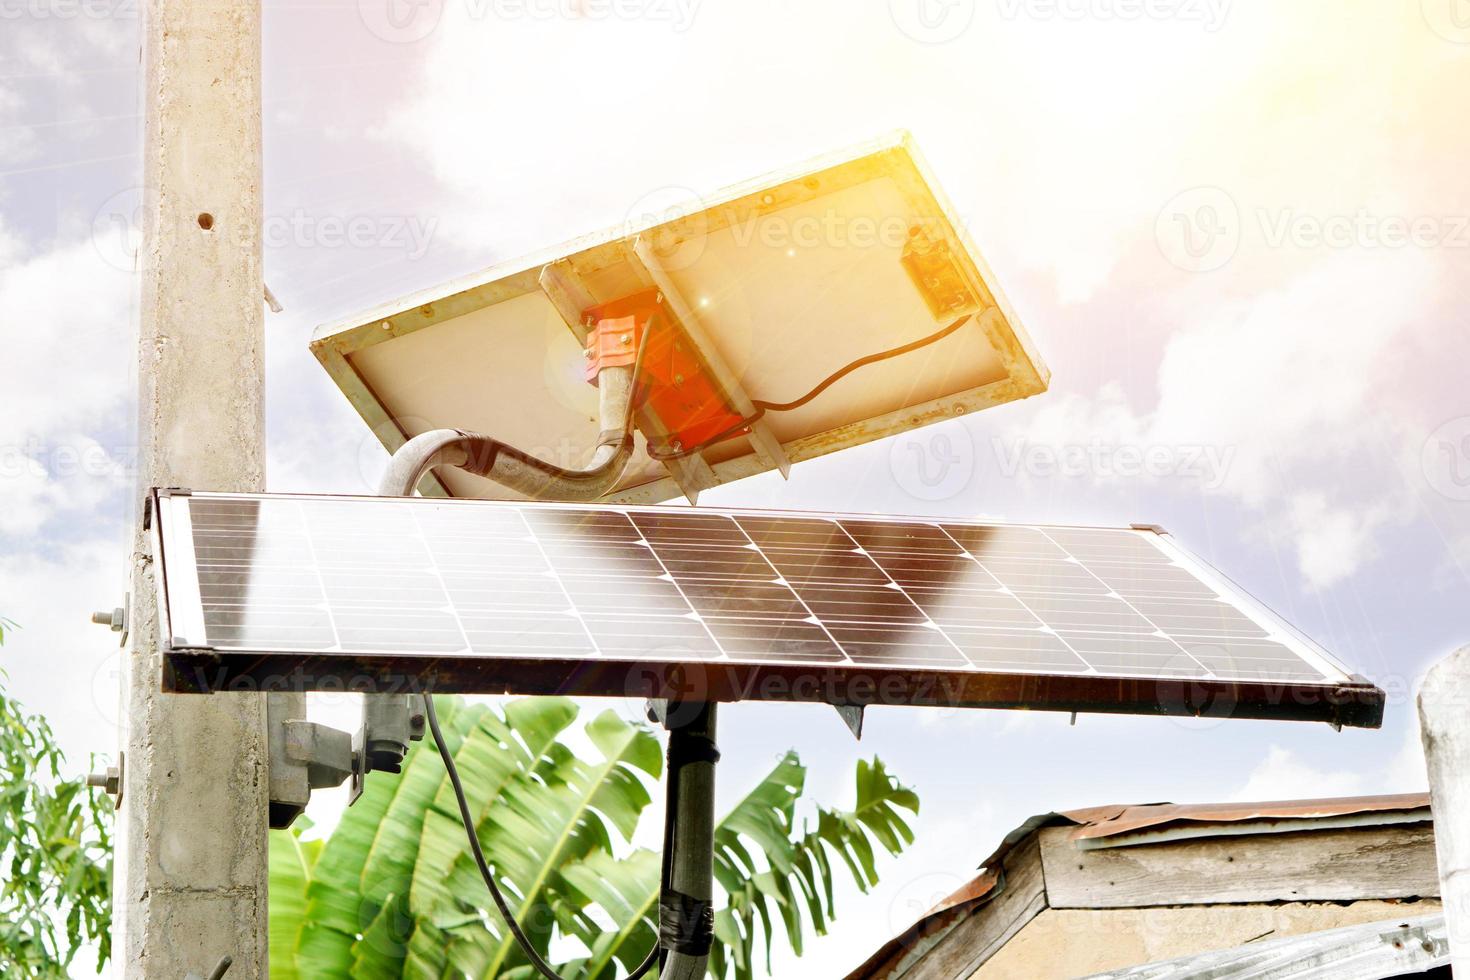 närbild av solpaneler för hemmabruk. för närvarande är människor i thailand intresserade av teknik för att spara el i hemmet genom att använda solceller för att använda mer. foto